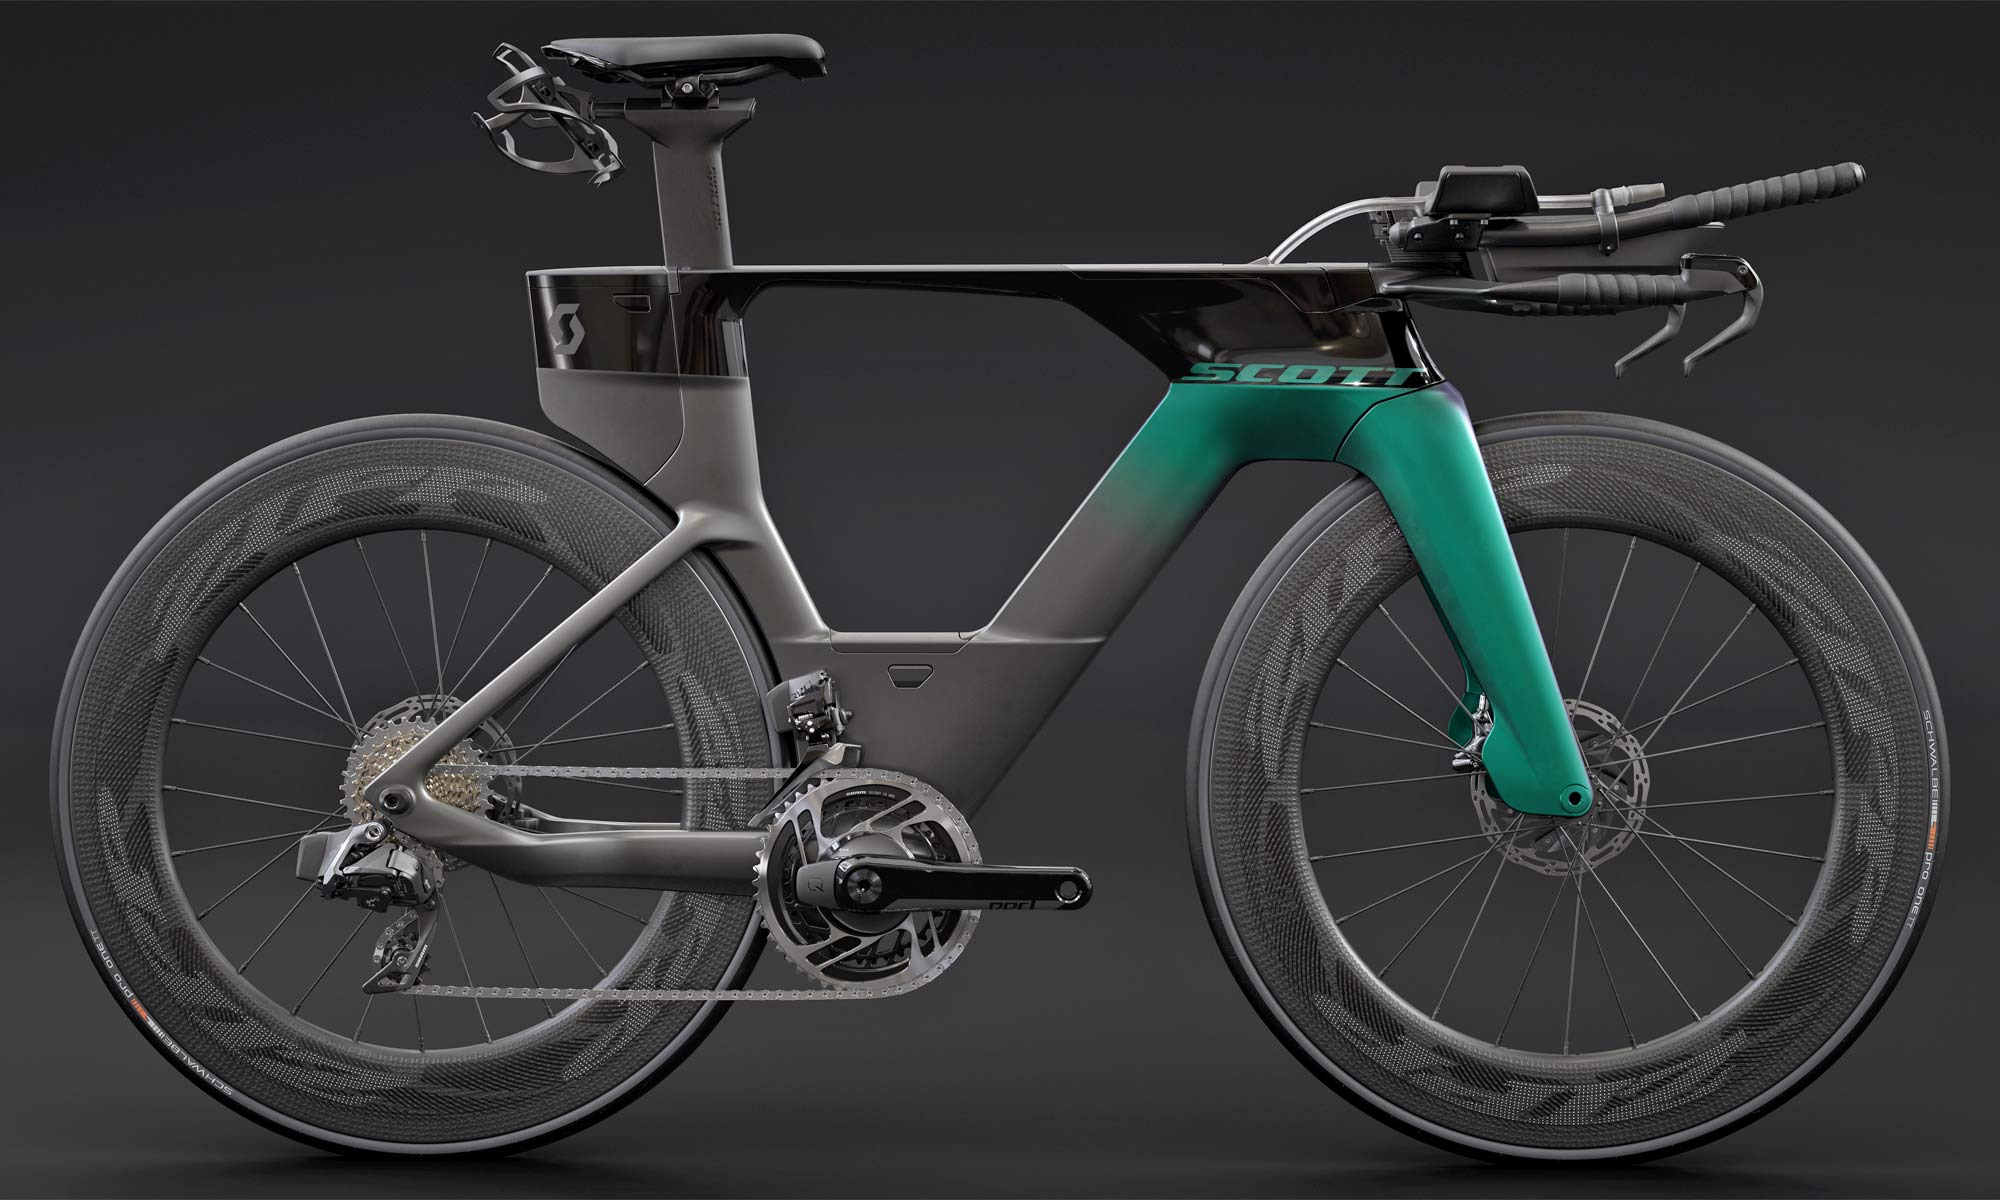 2021 Scott Plasma 6 integrated aero carbon triathlon bike, Premium complete